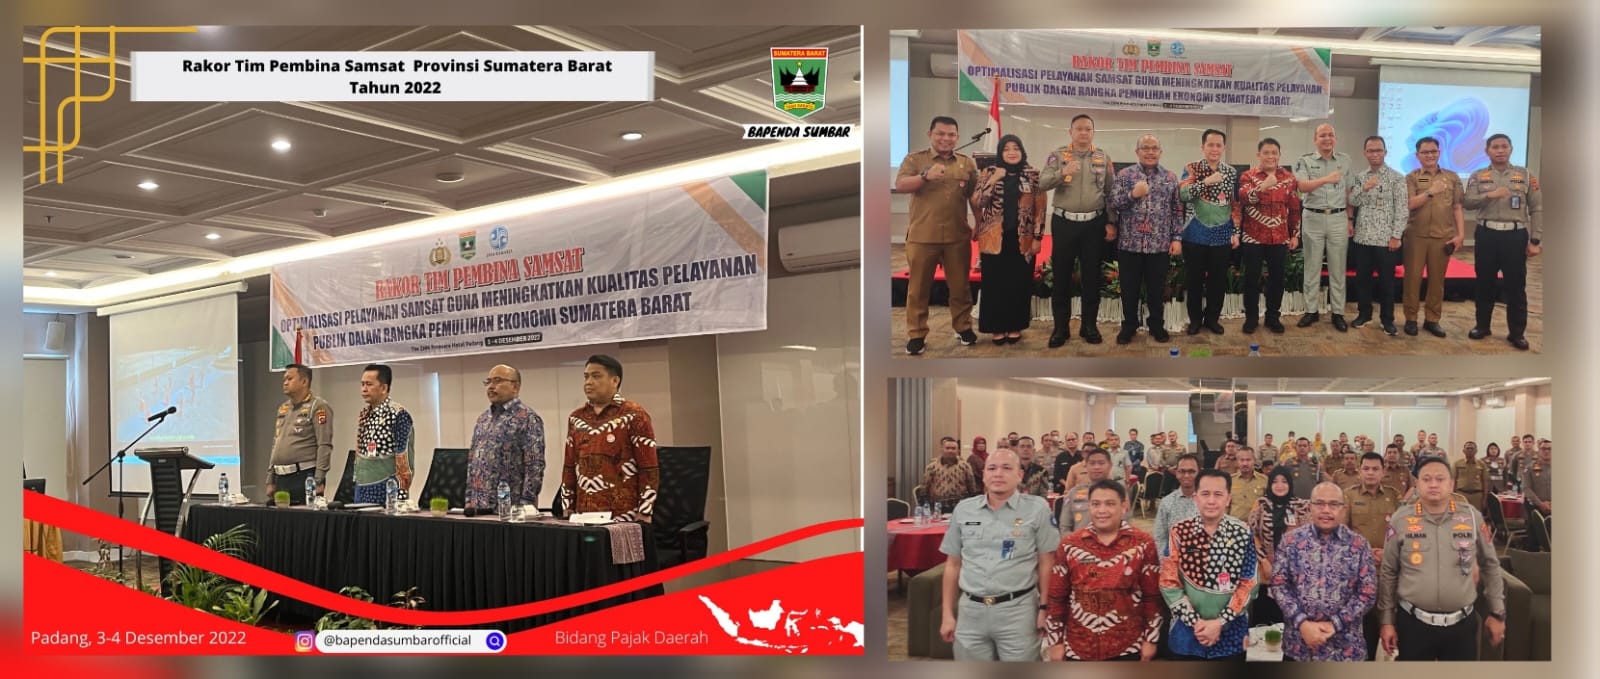 Jalin Sinergi, Bapenda Laksanakan Rakor Tim Pembina Samsat Sumatera Barat